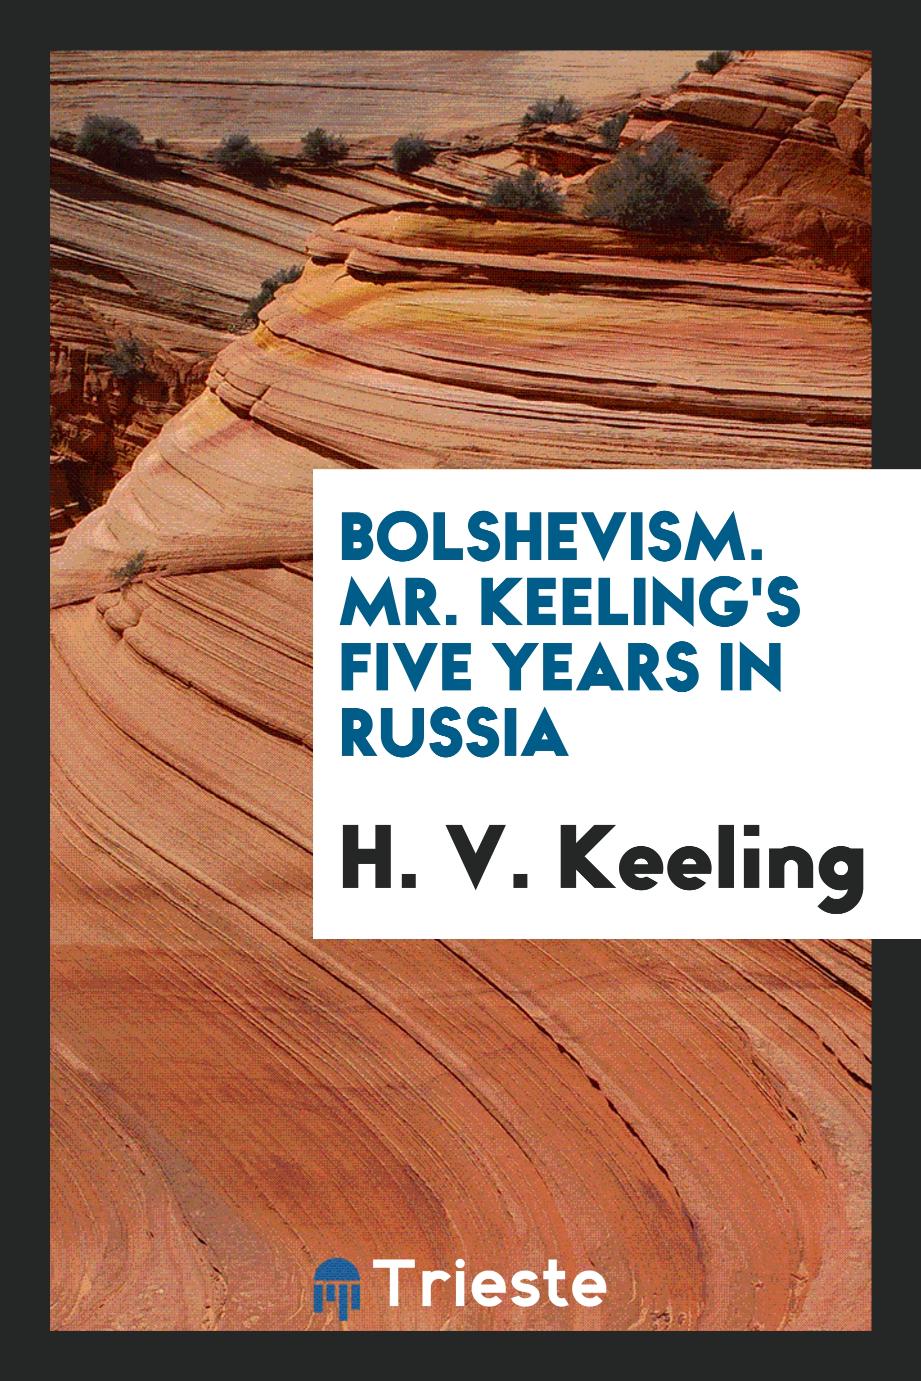 Bolshevism. Mr. Keeling's five years in Russia